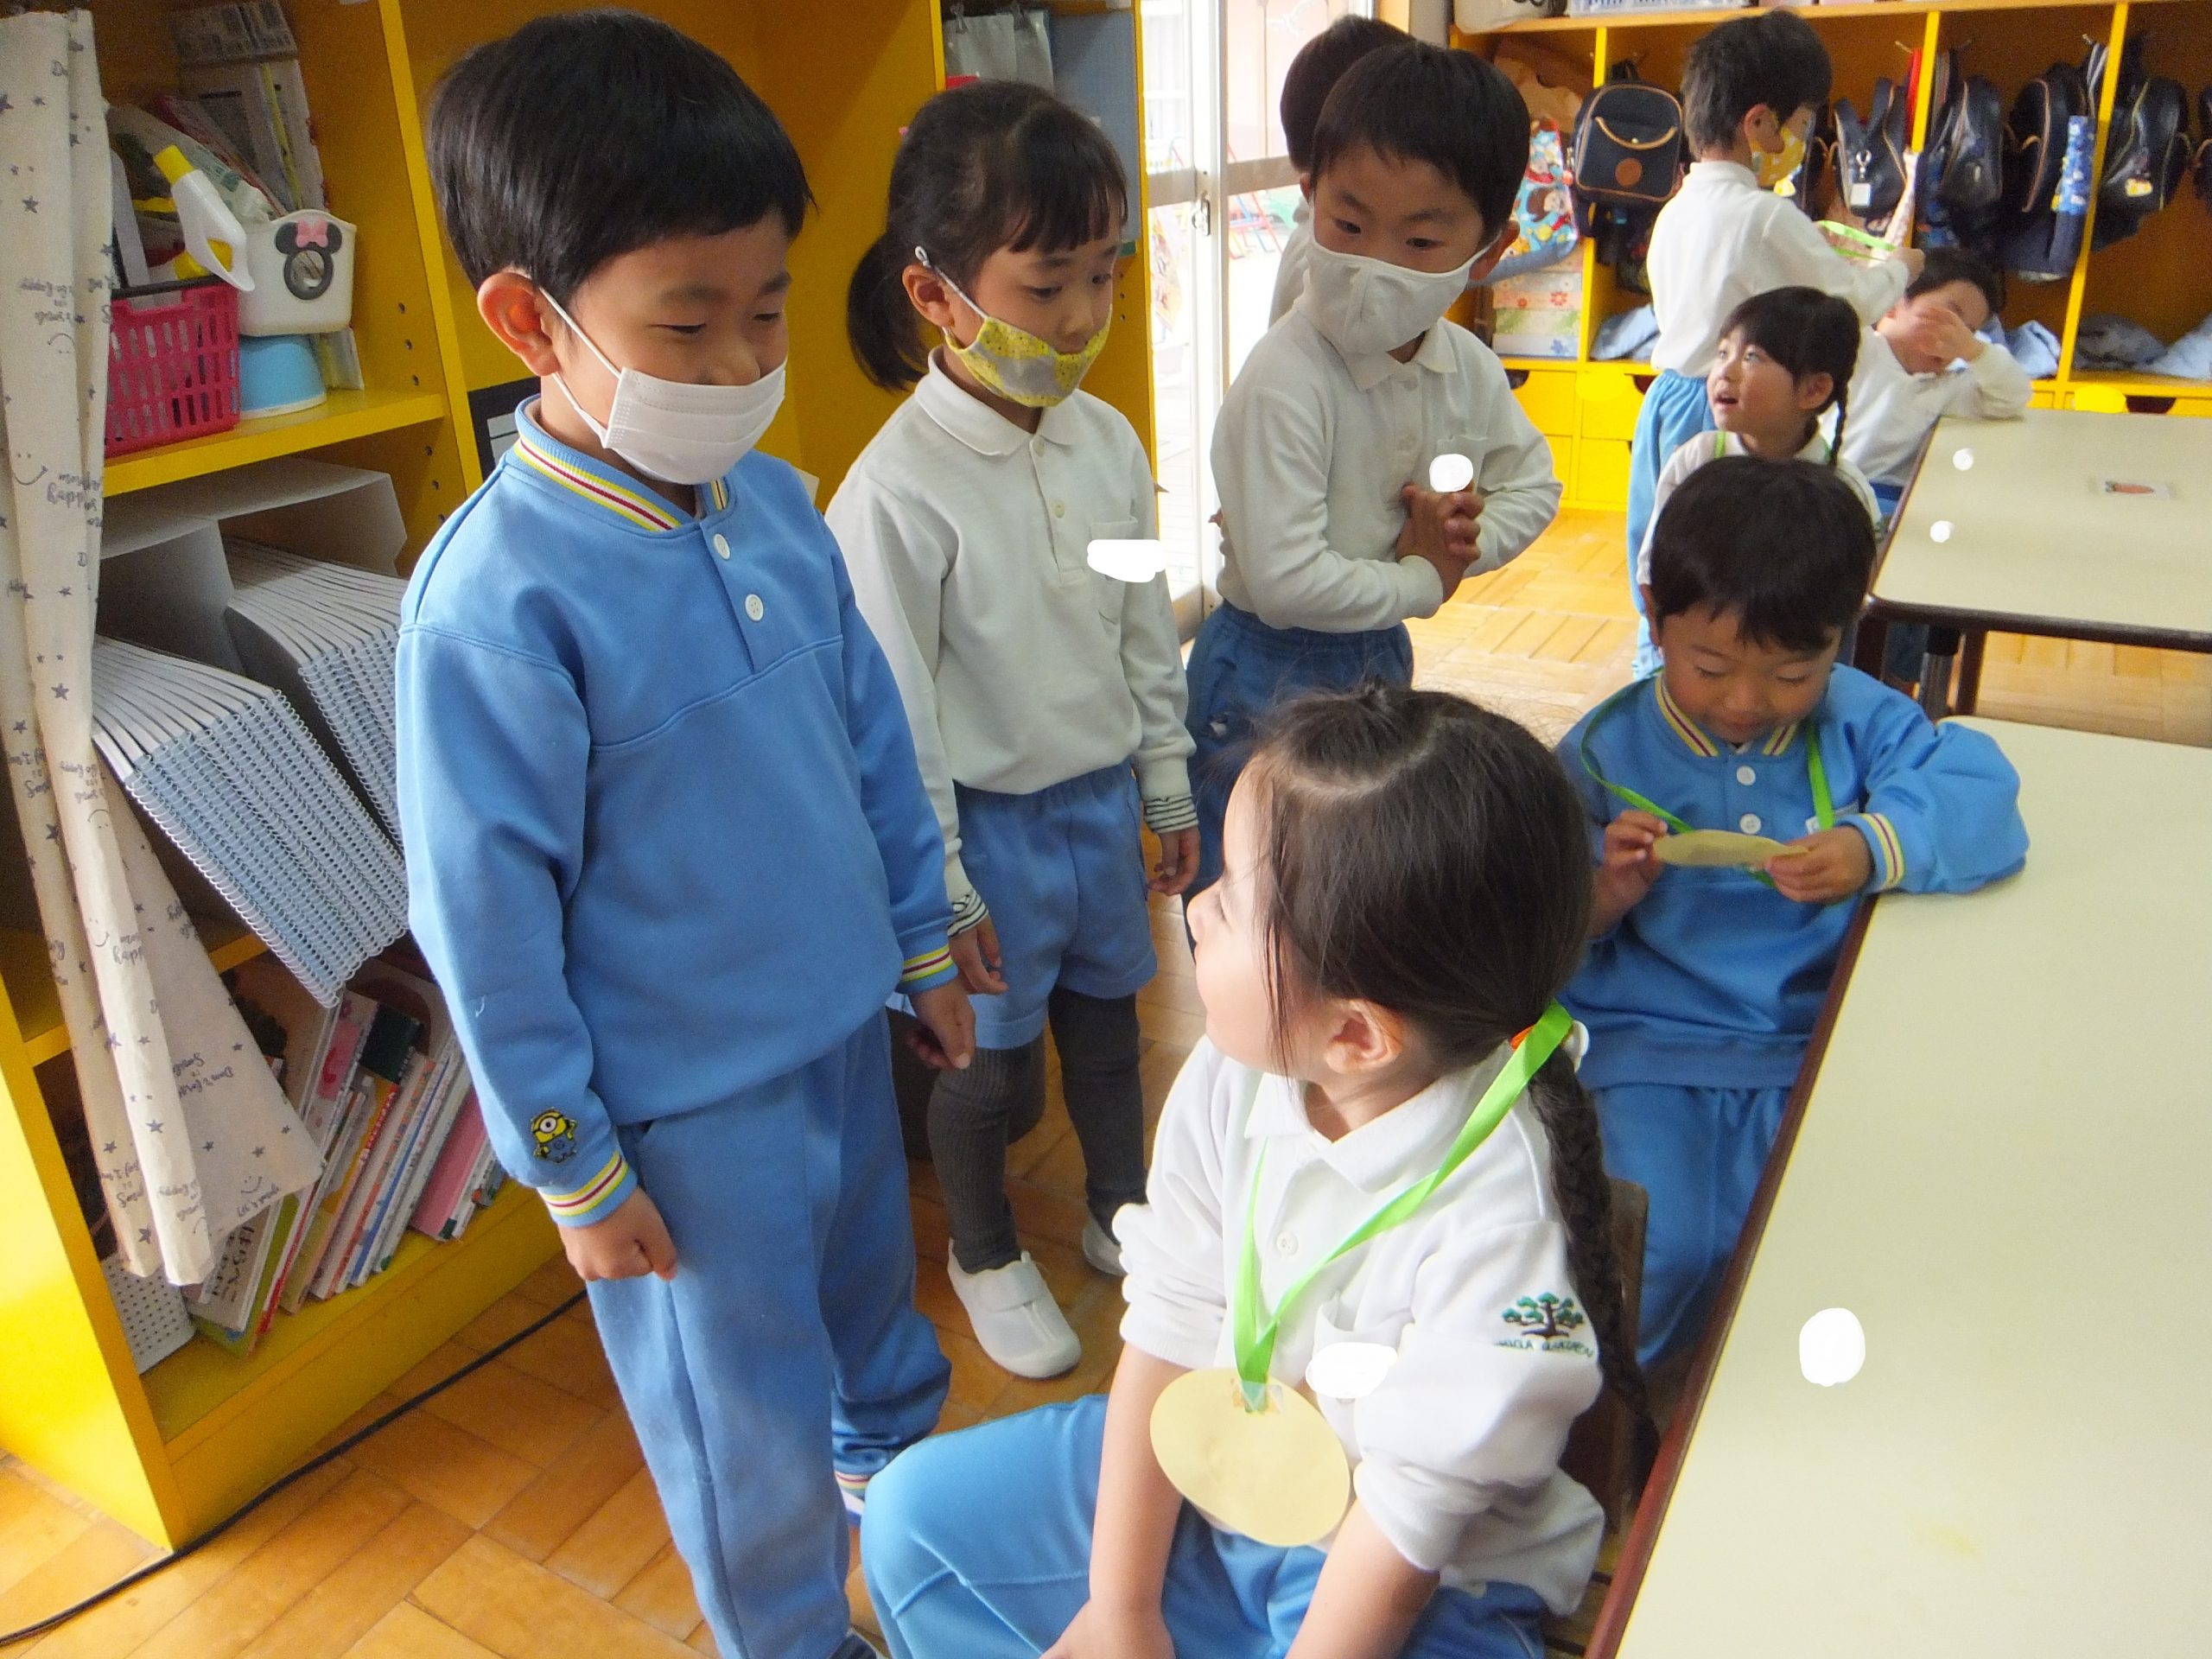 即納-96時間限定 国風第一幼稚園 男児制服等（単品販売可） - 通販 